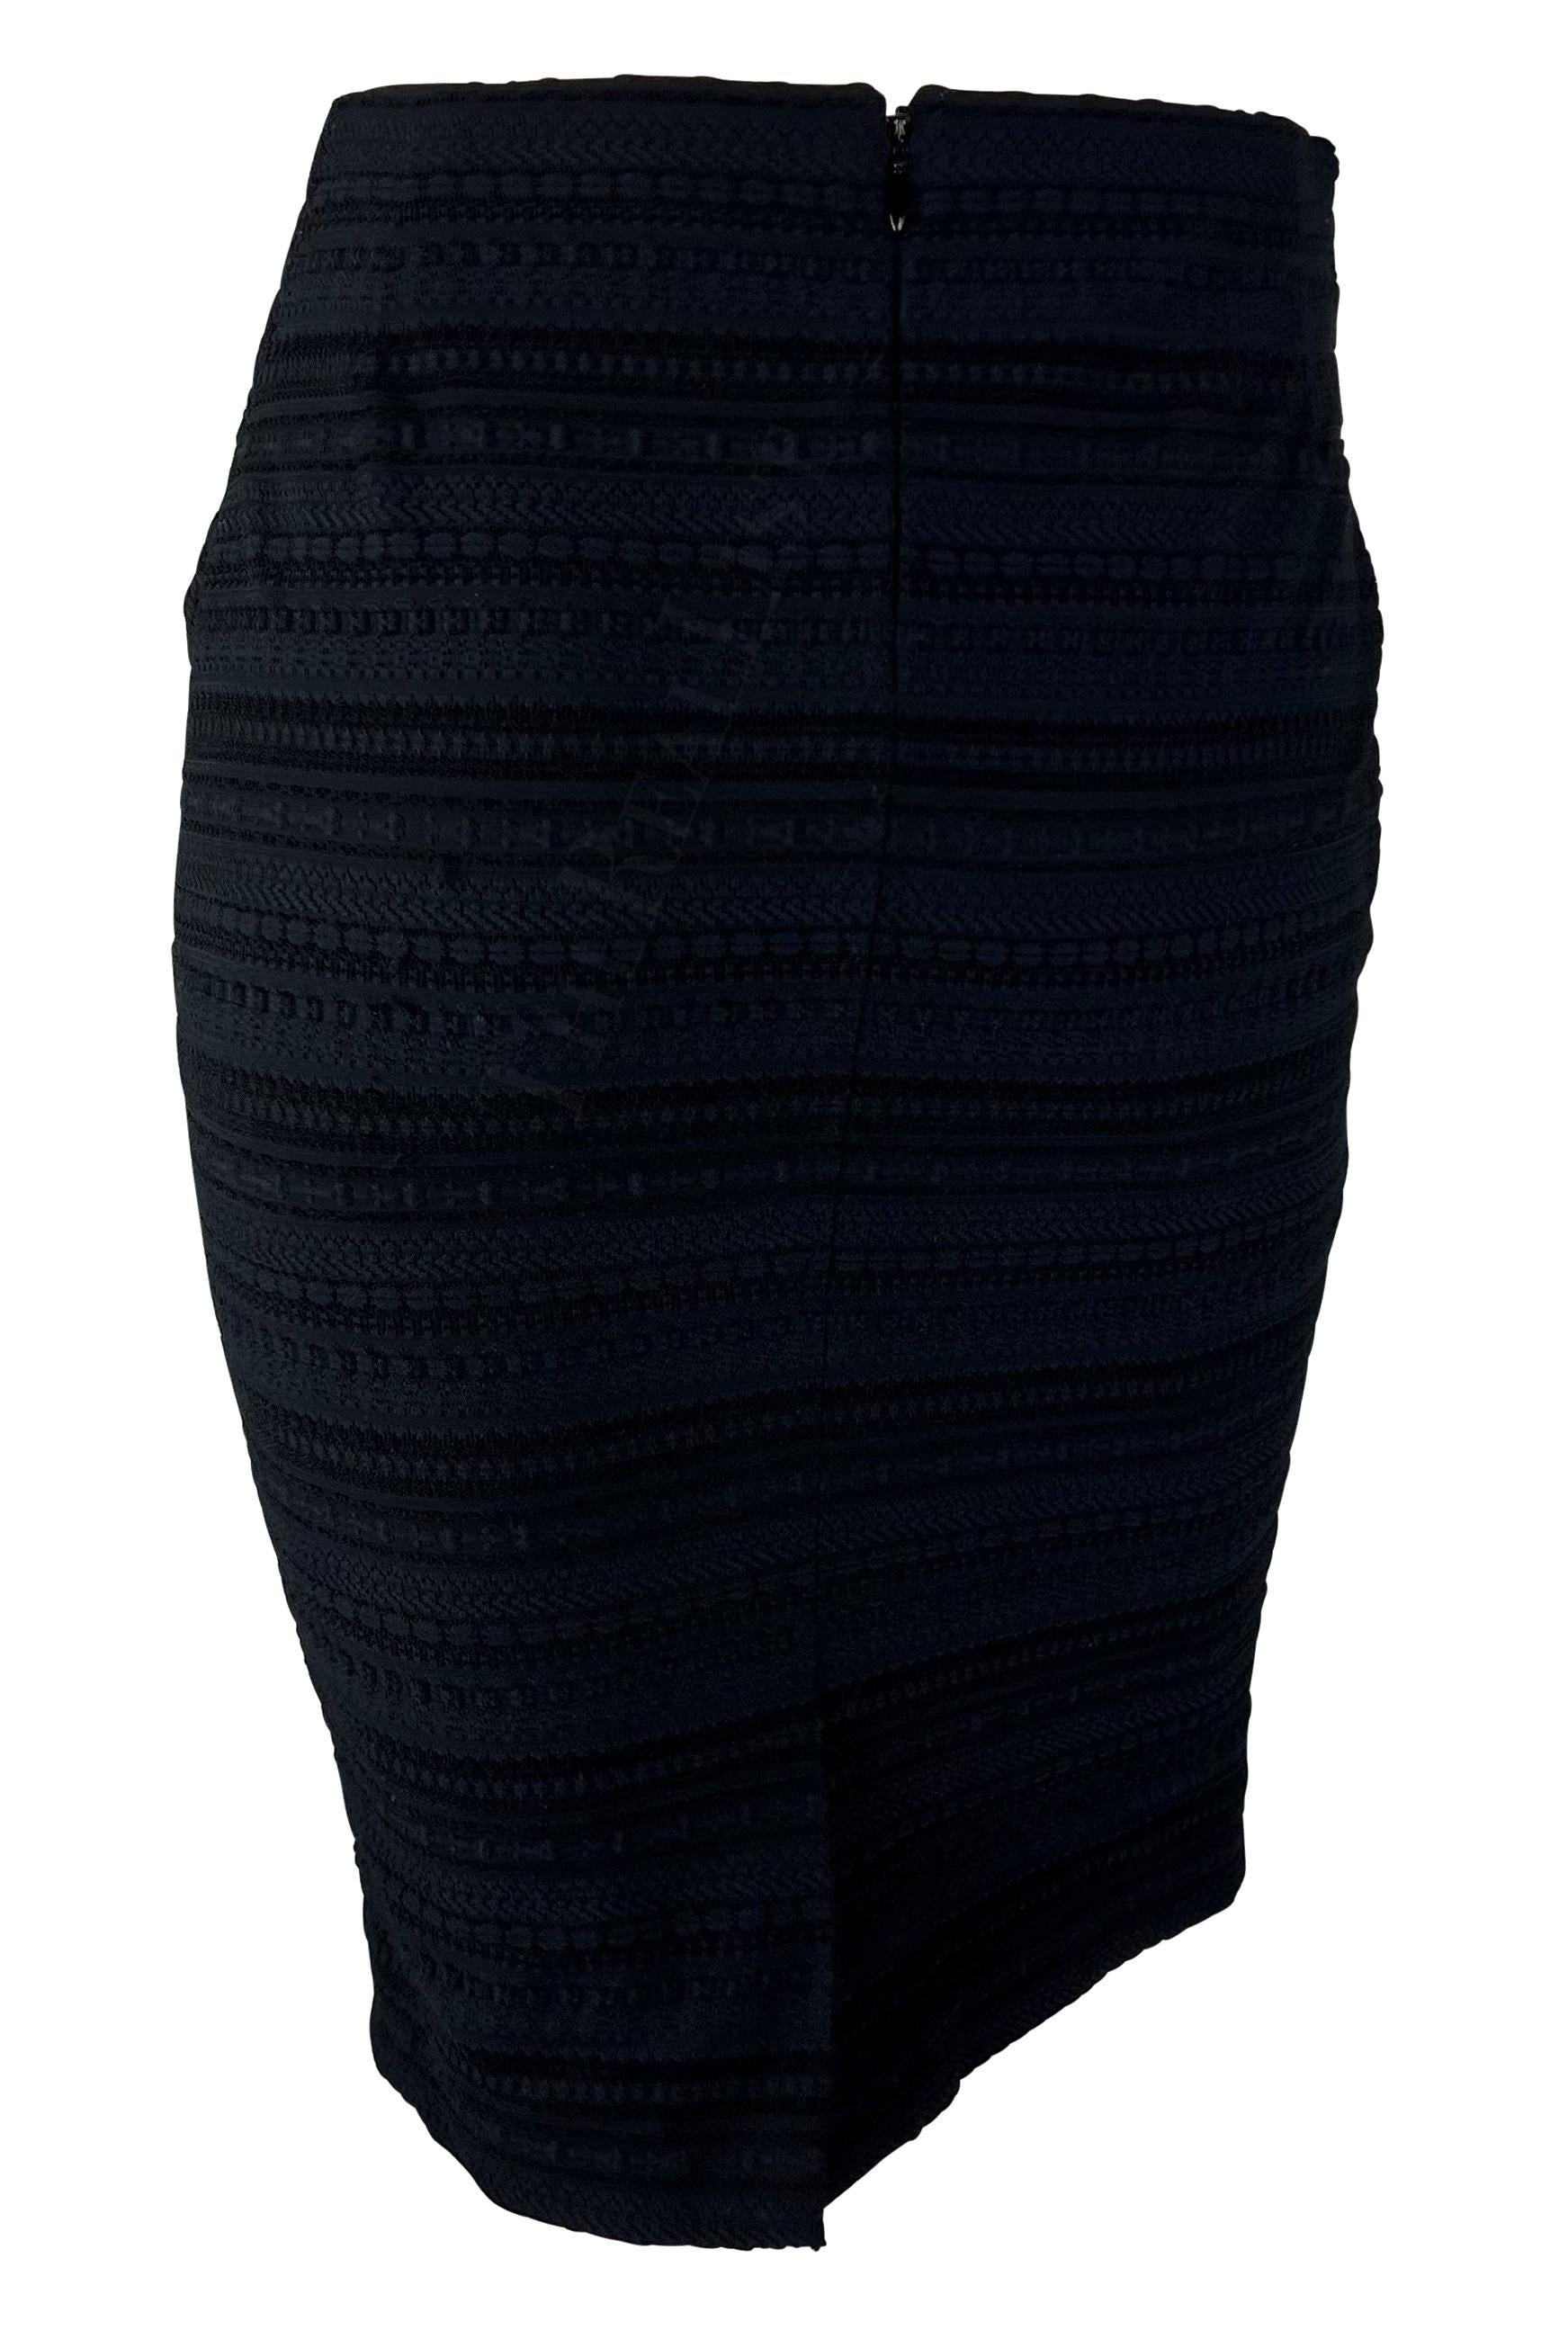 Dolce & Gabbana - Jupe fourreau moulante en maille texturée noire tissée, fin des années 1990 Pour femmes en vente